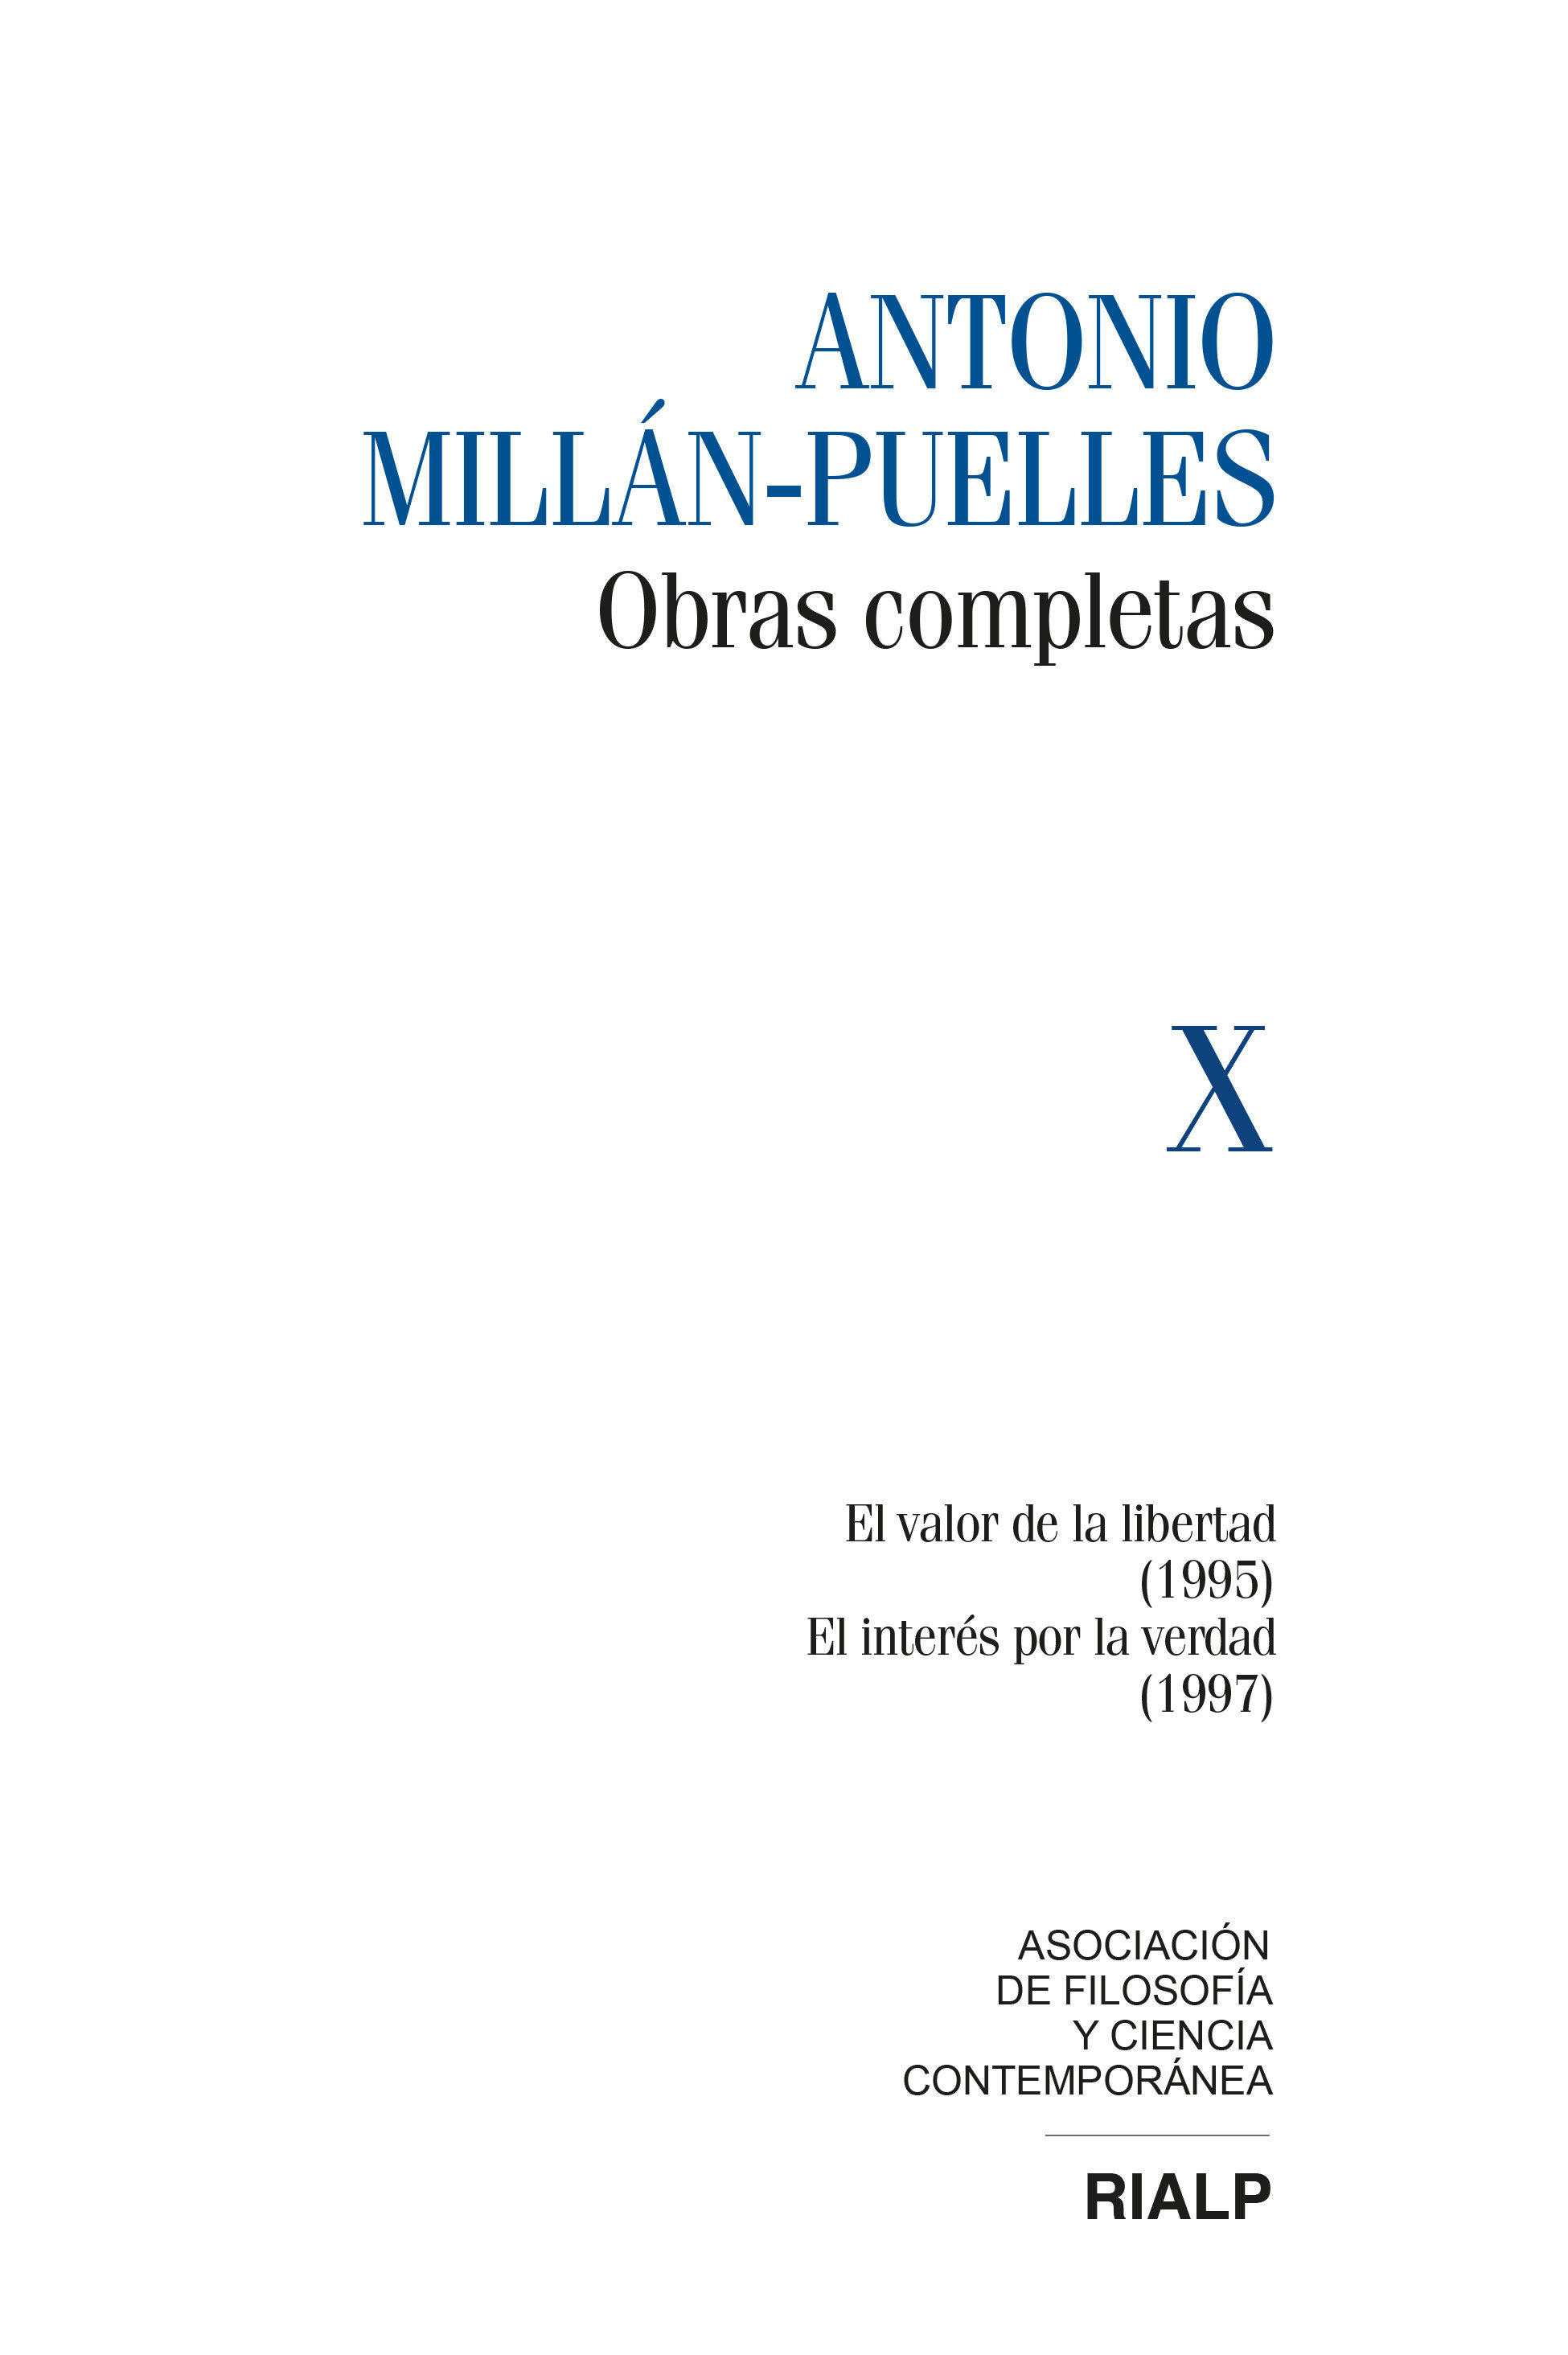 Millán-Puelles Vol. X Obras Completas   «El valor de la libertad (1995) / El interés por la verdad (1997)»